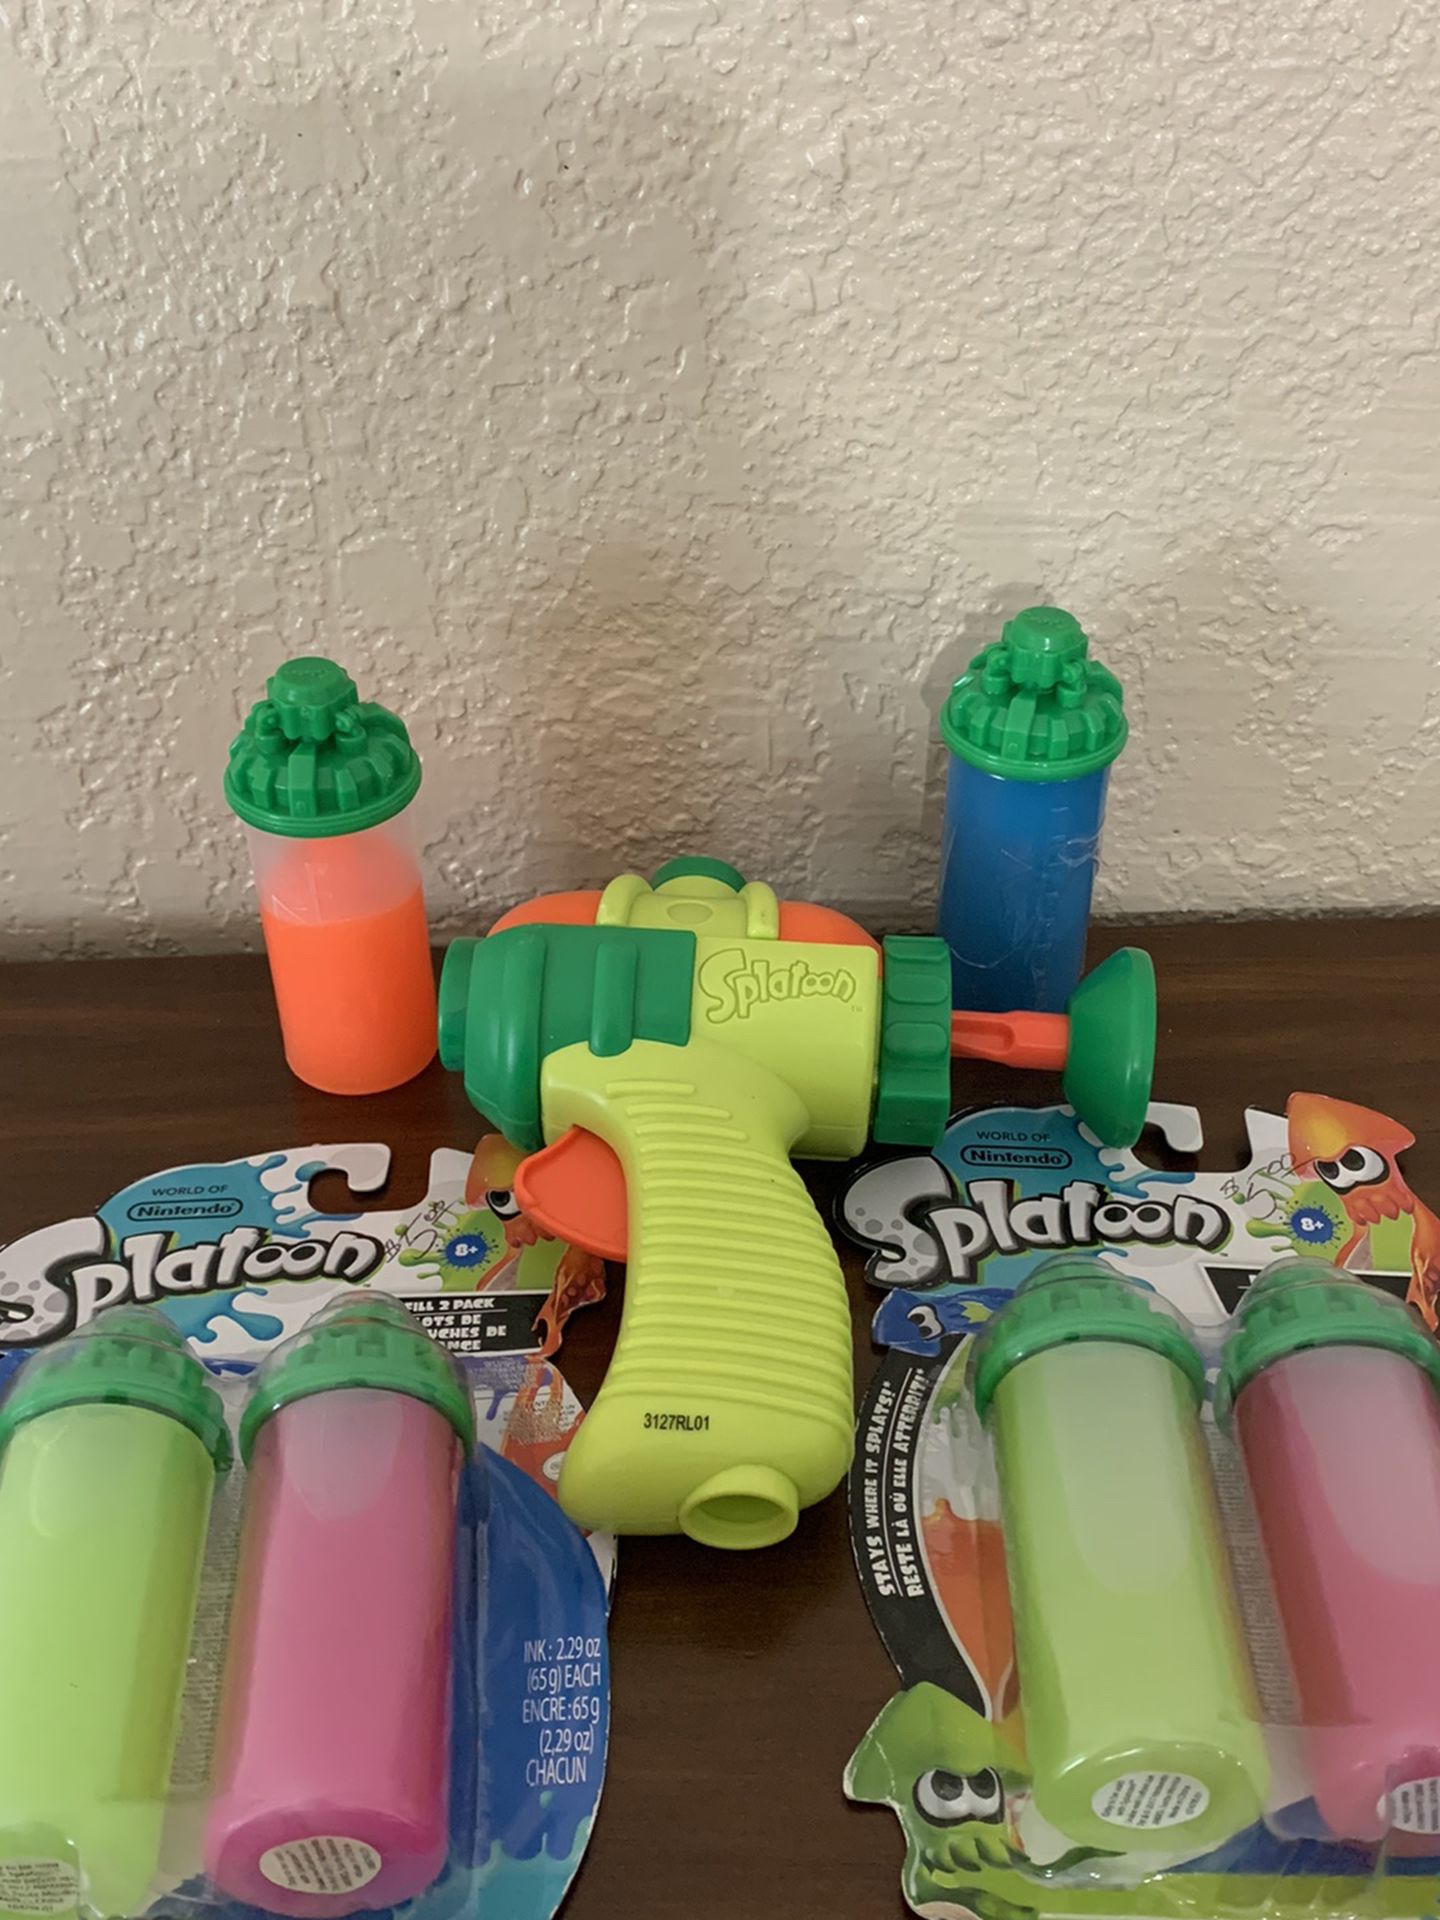 Splatoon gun & 2 sealed packs of splatter